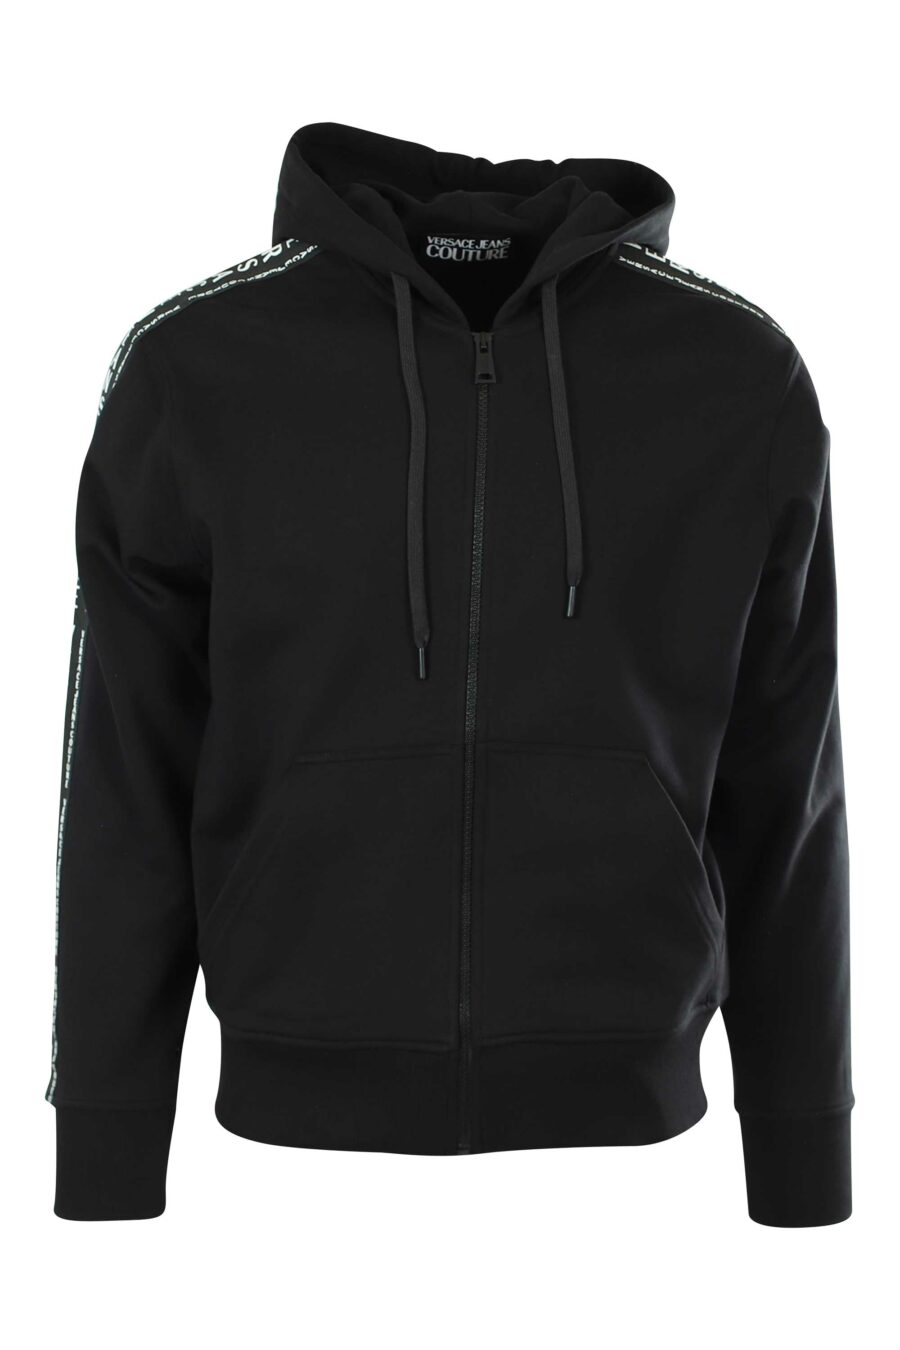 Black hooded sweatshirt with zip and logo - 8052019321692